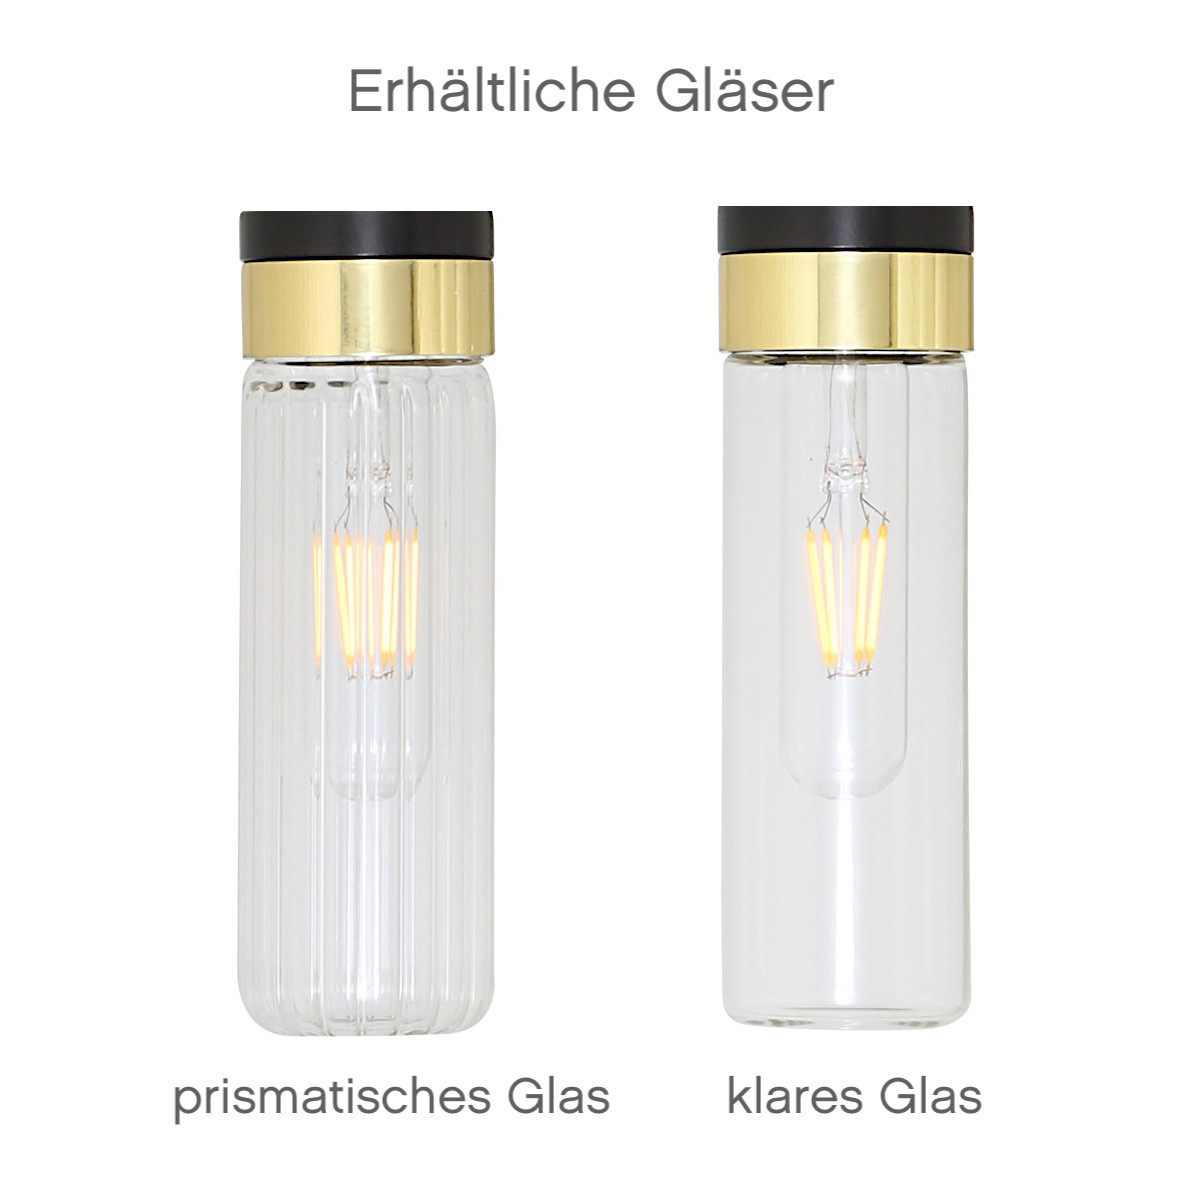 Badezimmer-Wandlampe mit klarem oder prismatischem Glaszylinder, IP65: Klares oder prismatisches Schutzglas